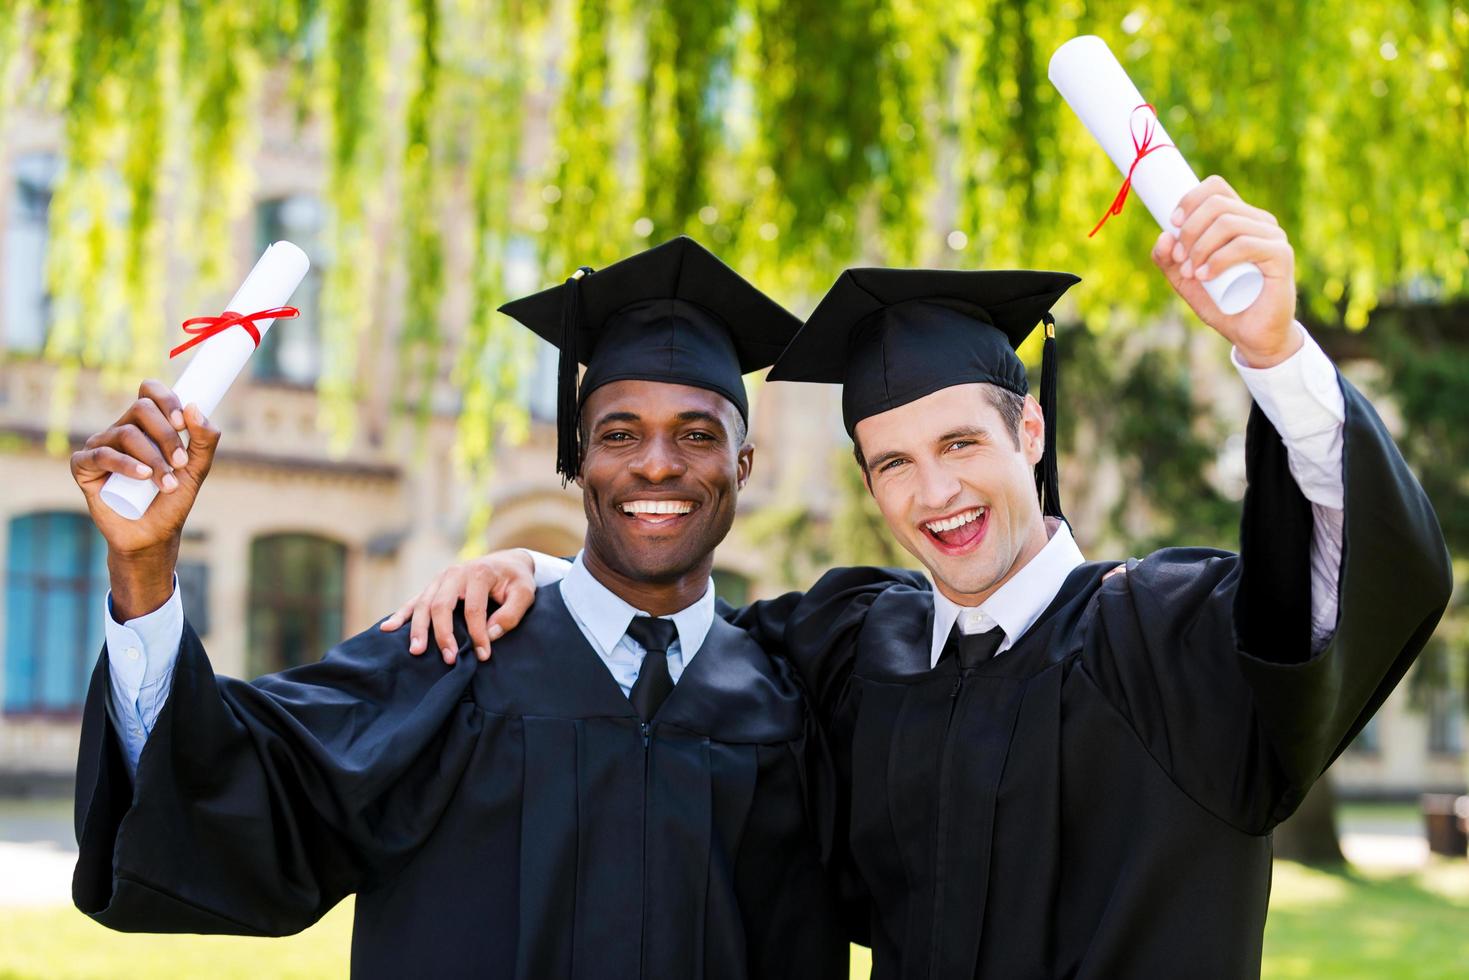 zusammen Abitur gemacht. zwei glückliche junge männer in graduierungskleidern, die diplome und erhobene arme hochhalten foto